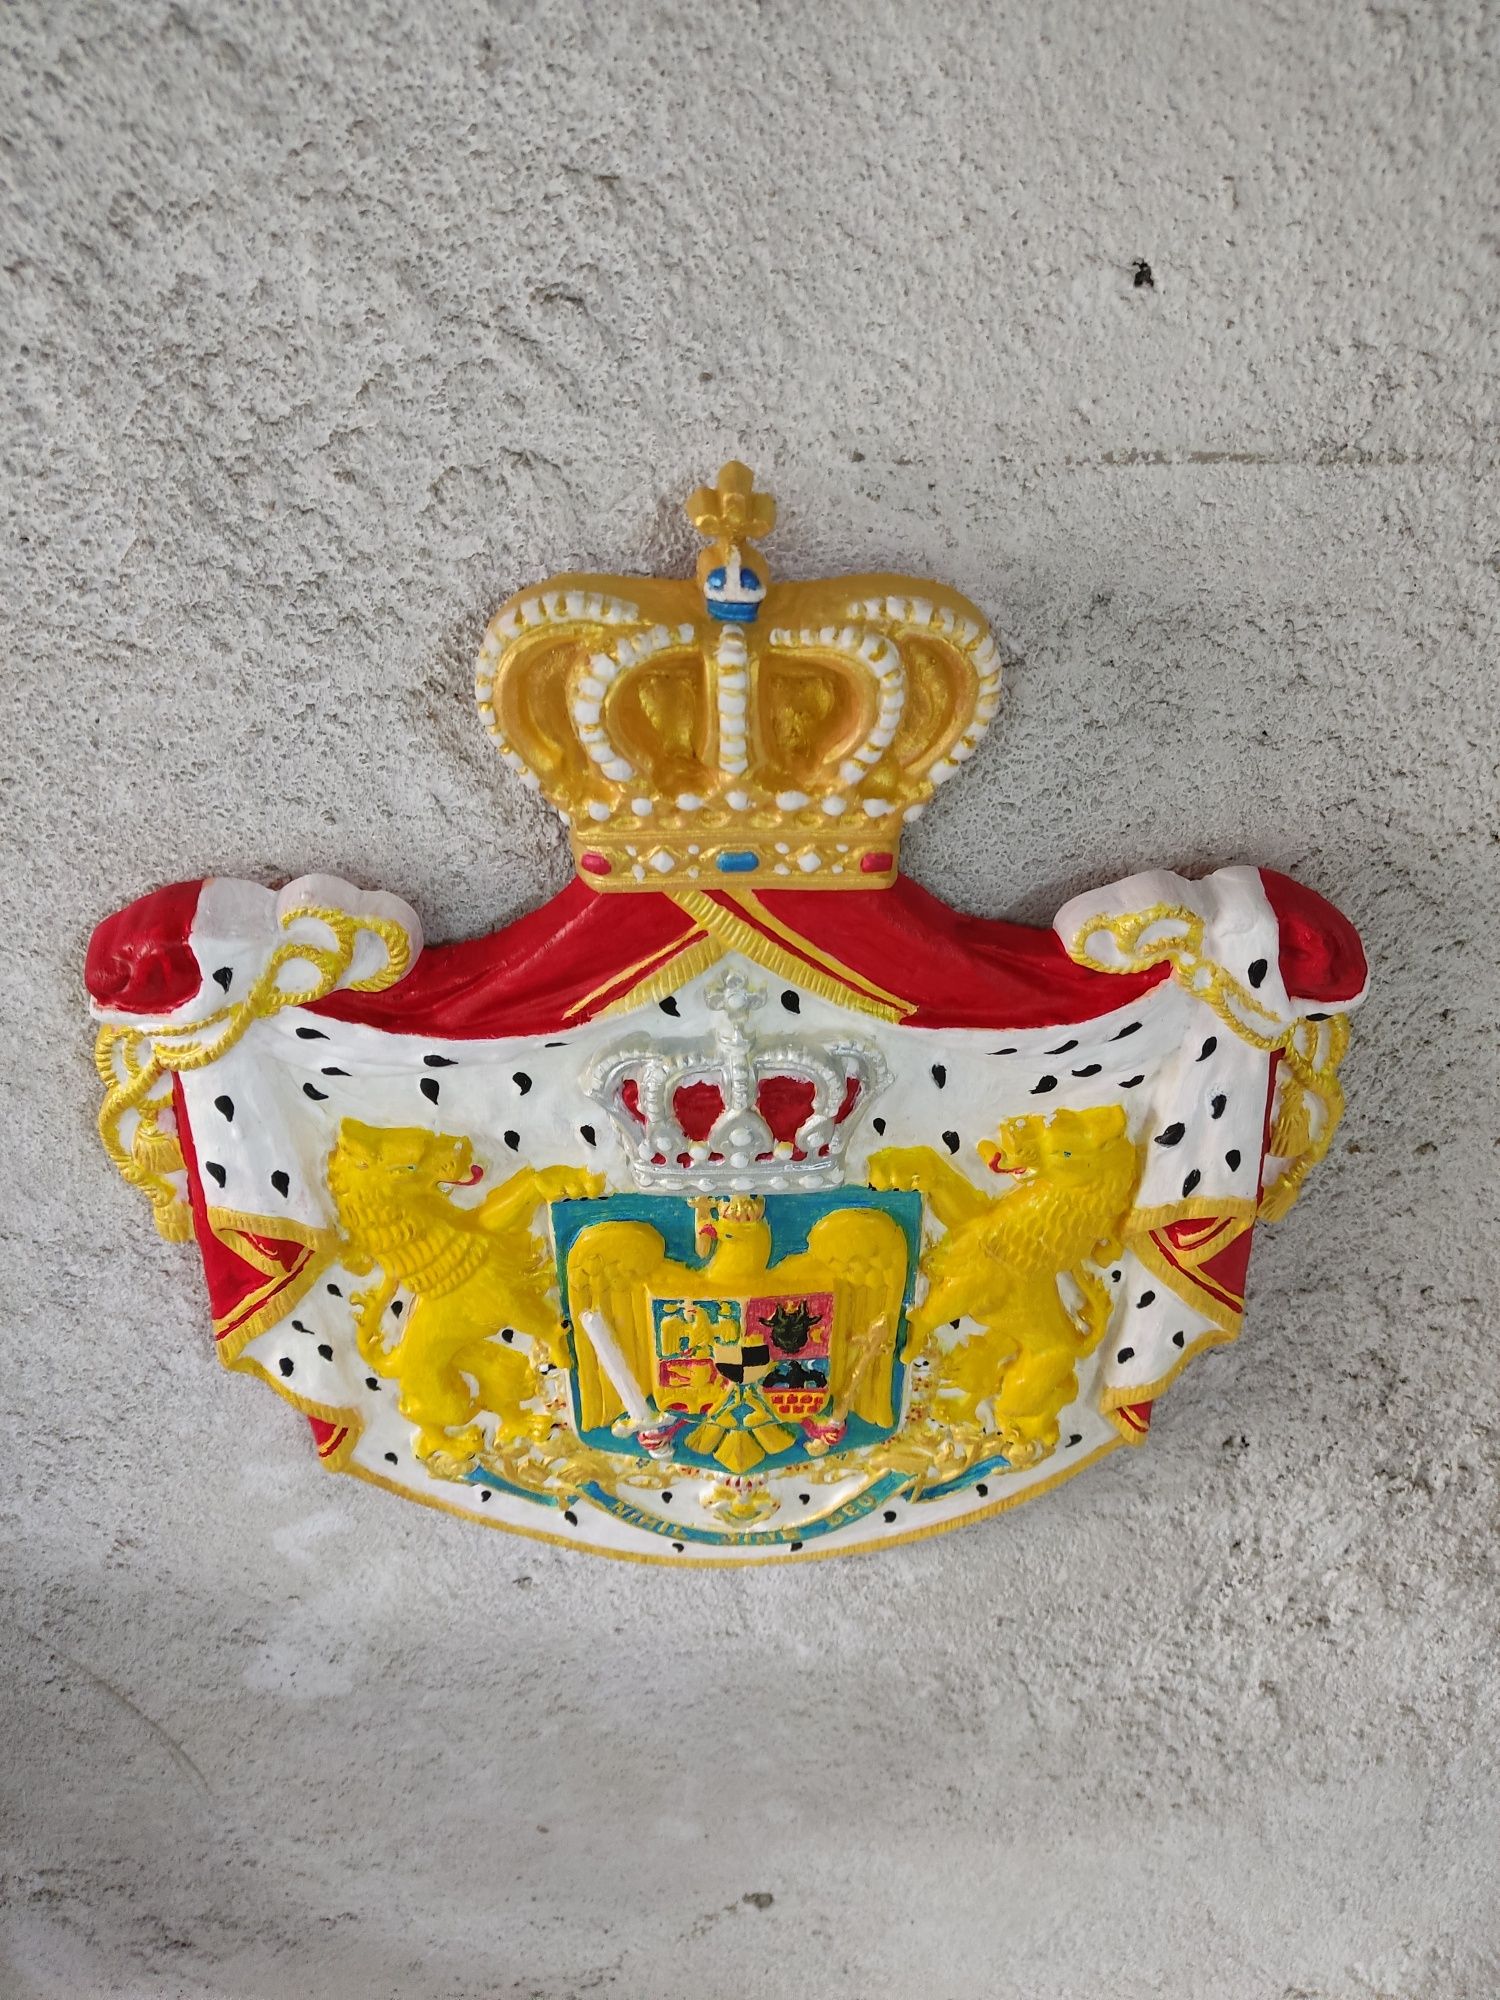 Stema Regală a României perioada regalistă